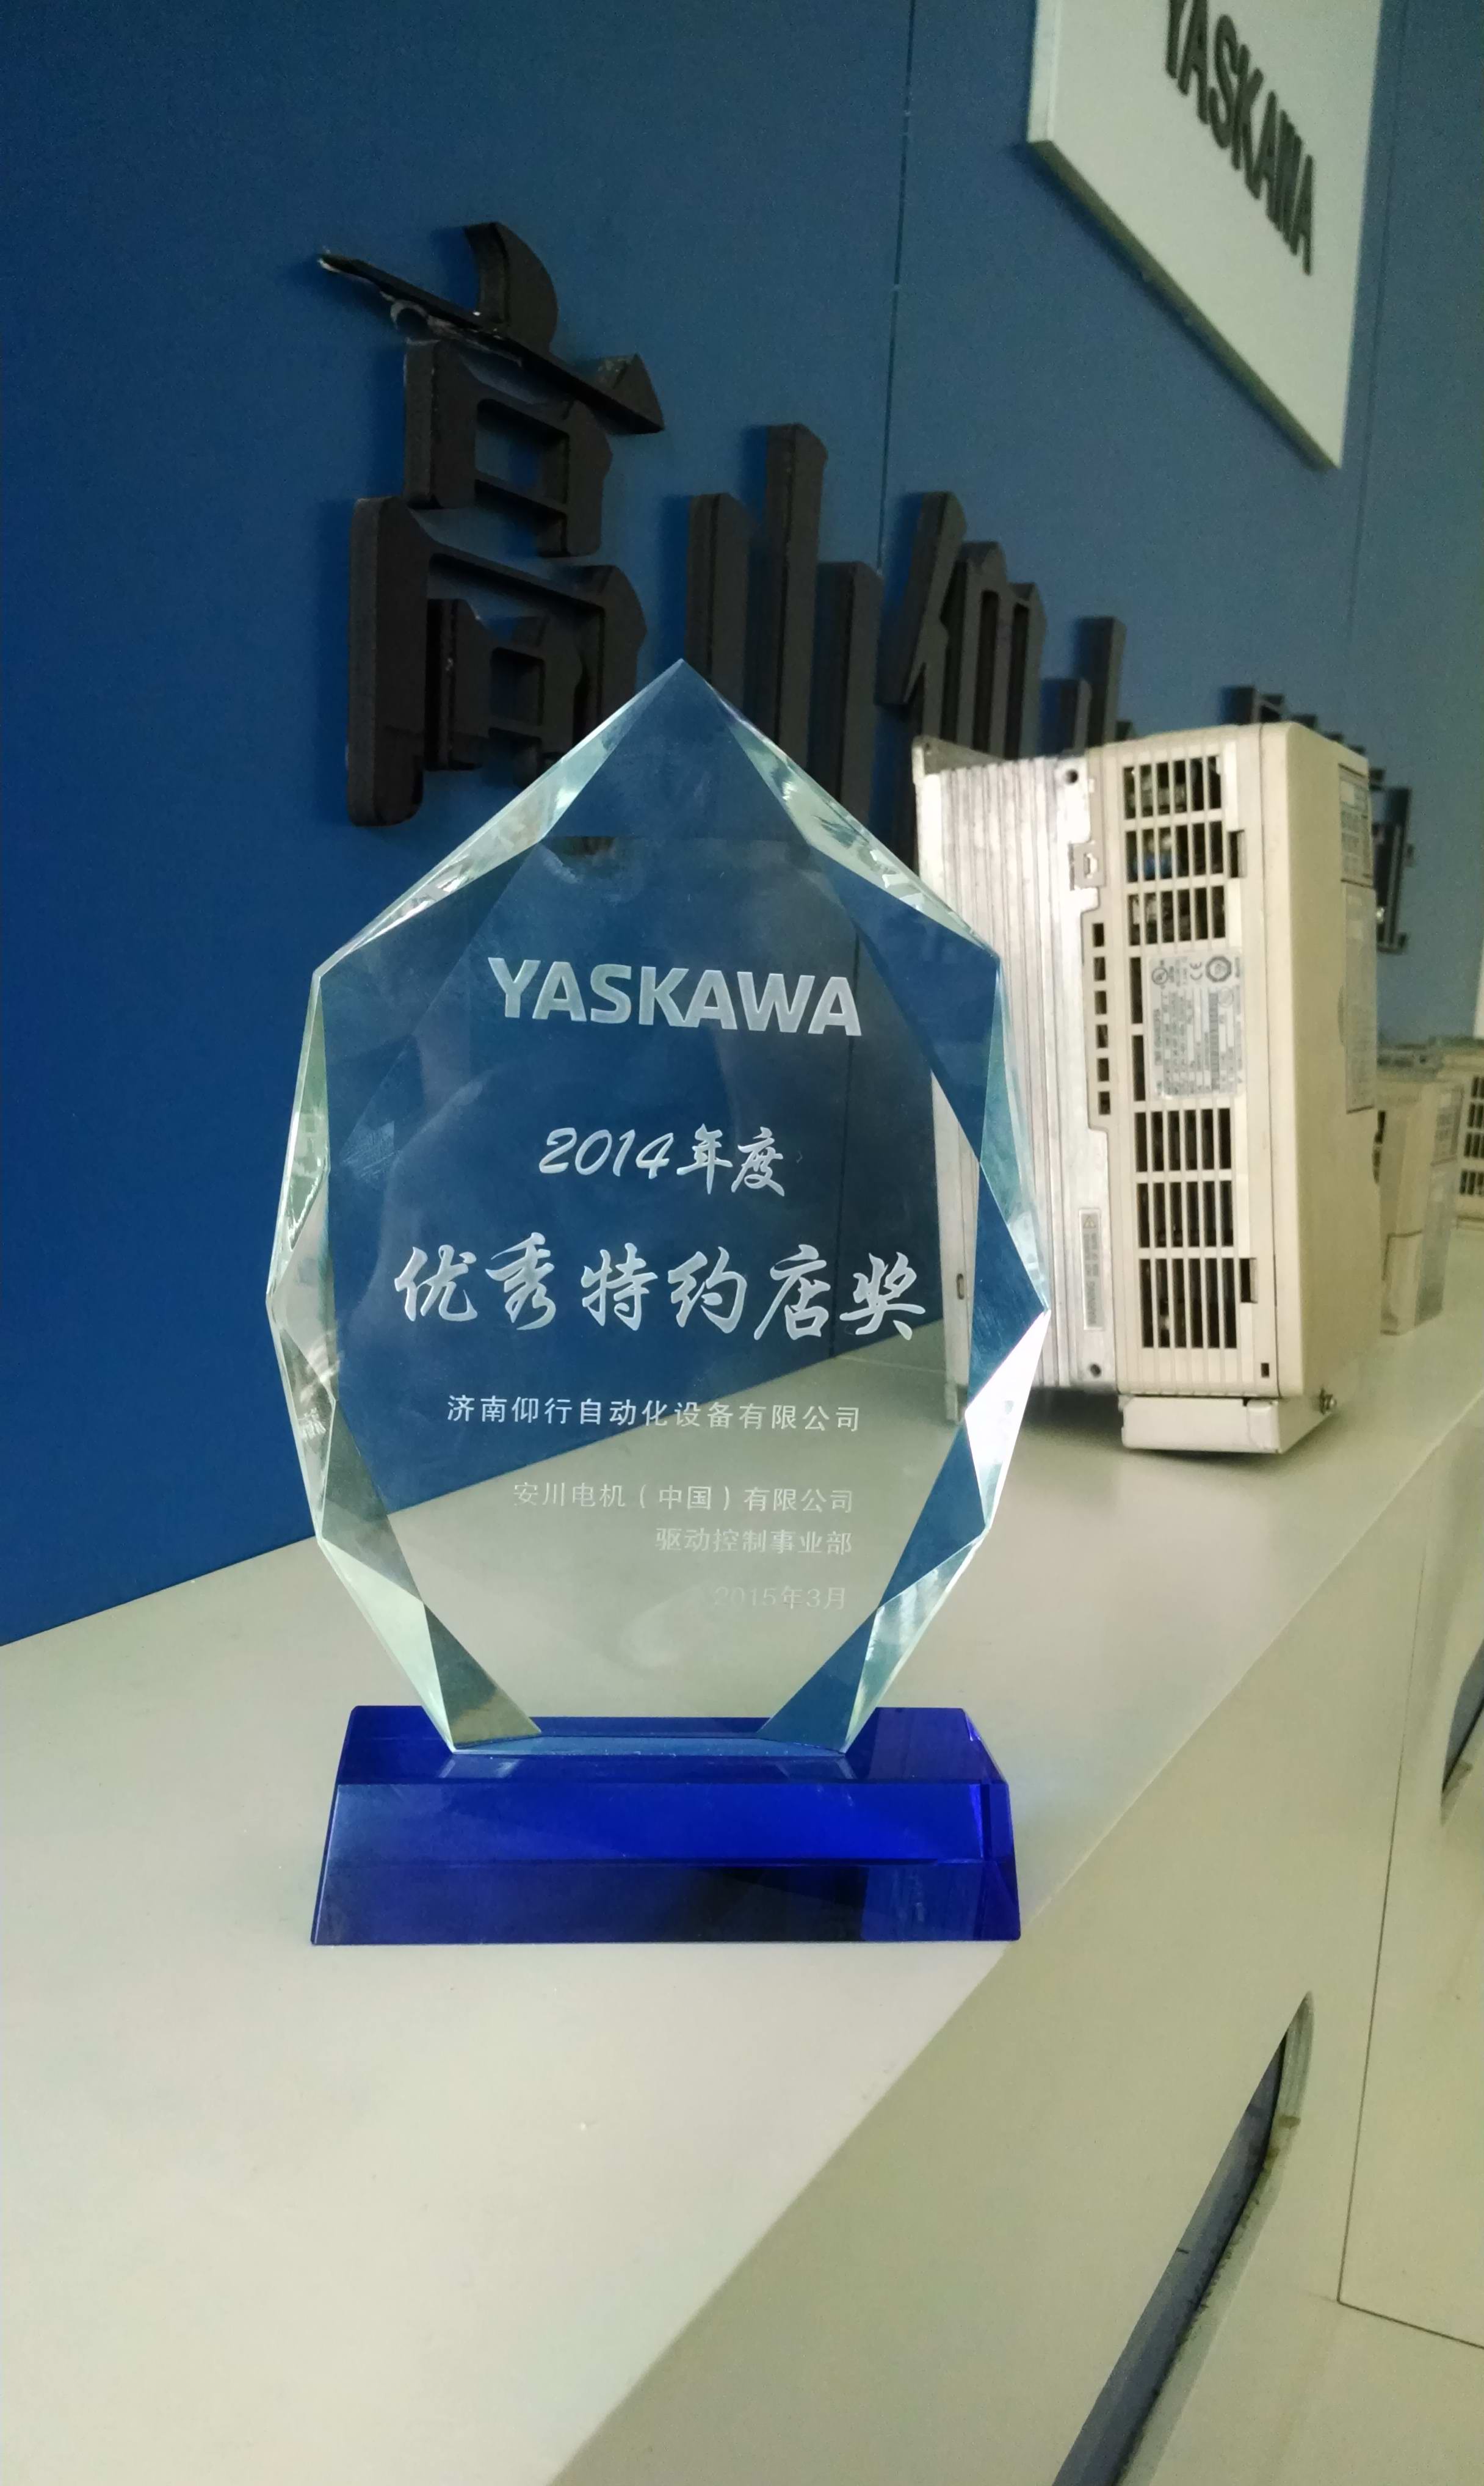 YASKAWA 安川变频器授权代理店证书颁发| 北京卓越世纪电气有限公司